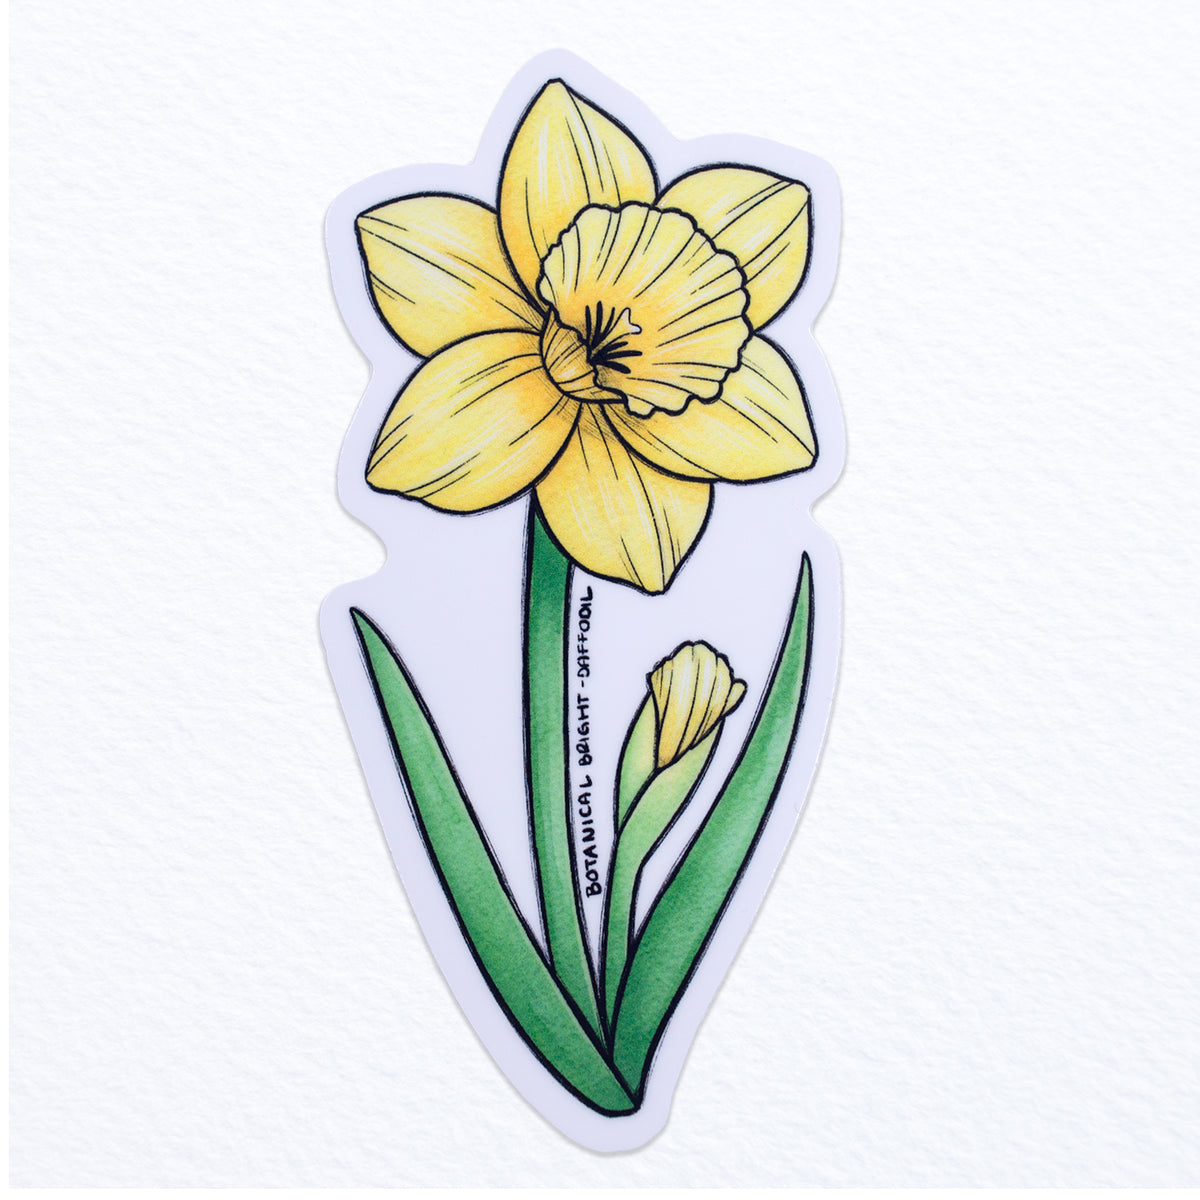 Rainbow Daffodil Flowers Keychain